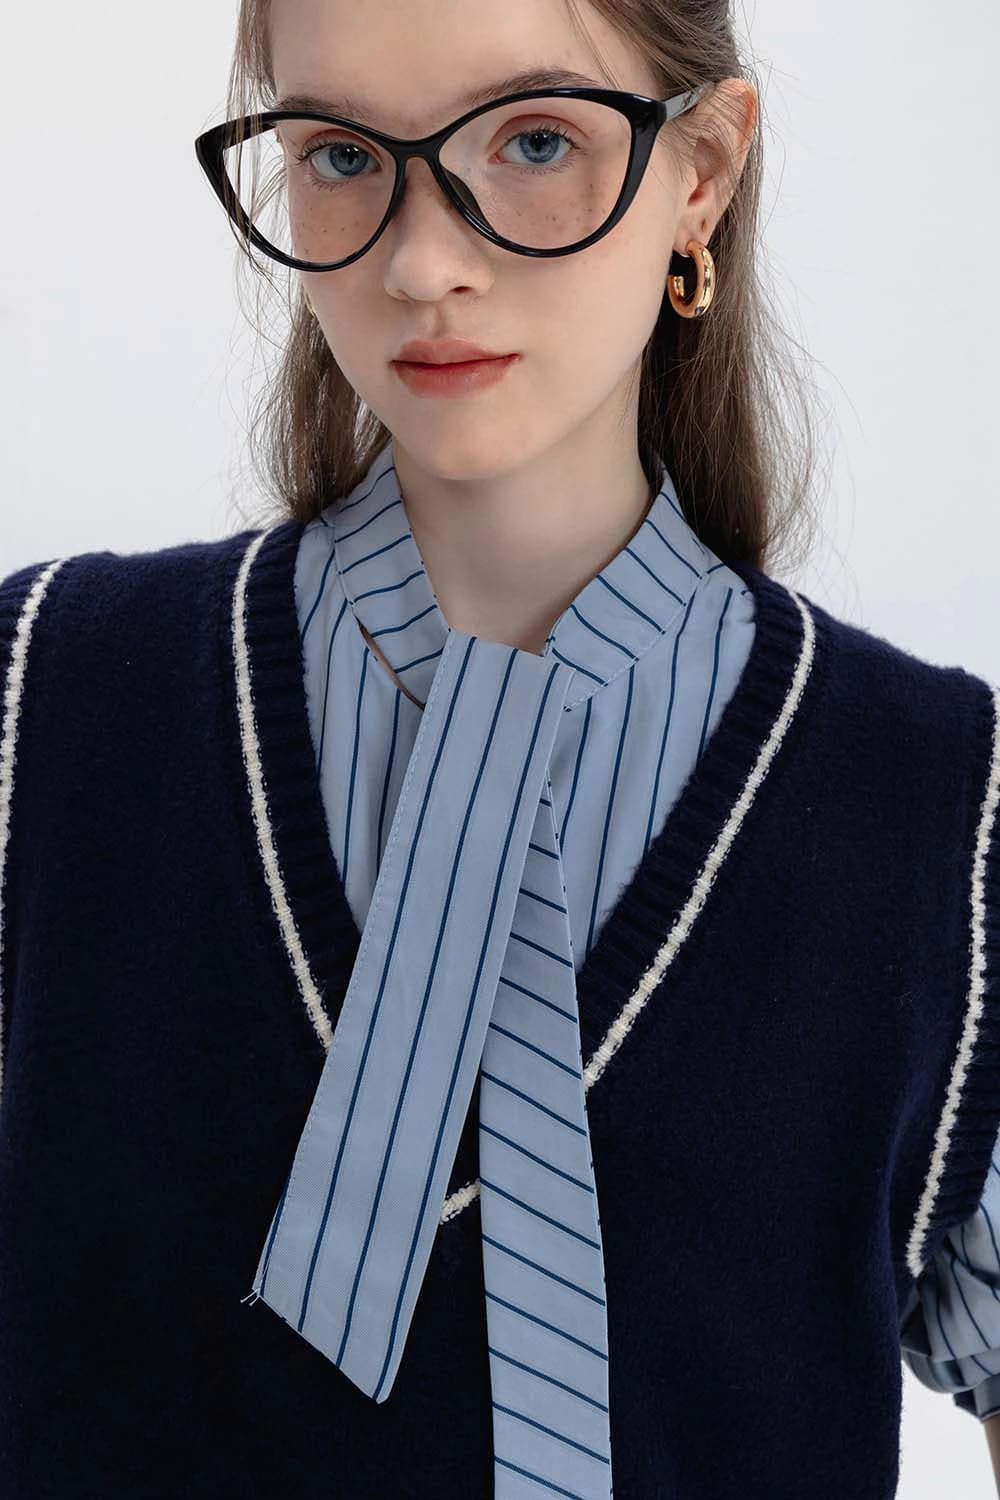 Baju Sweater Klasik dan Duo Baju Belang Pin untuk Penampilan Kasual Pintar